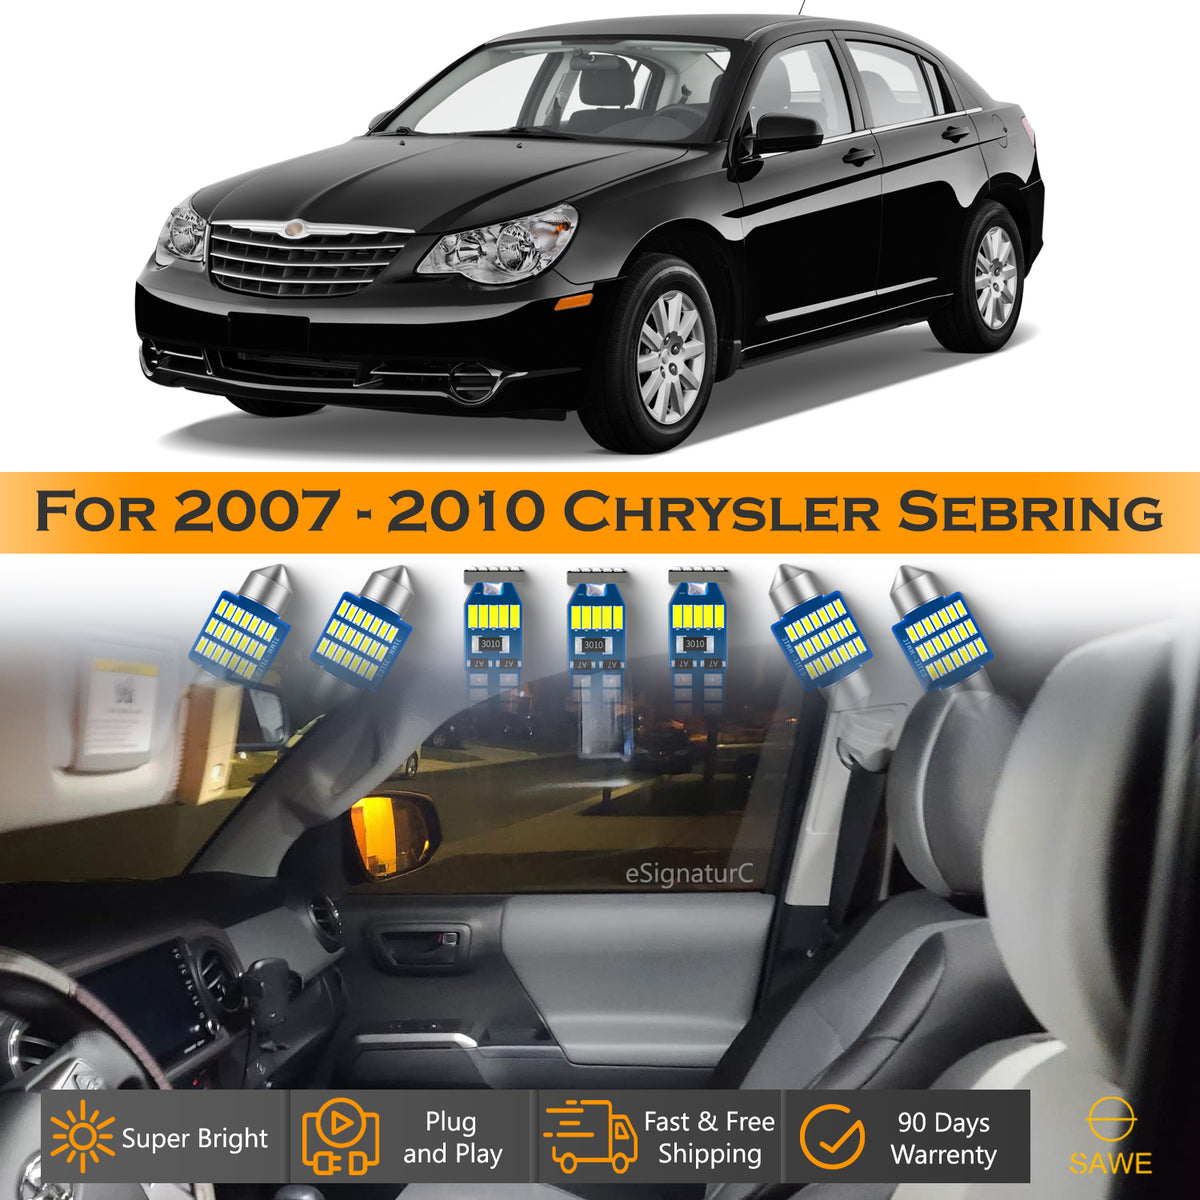 For Chrysler Sebring Interior LED Lights - Dome & Map Light Bulbs Package Kit for 2007 - 2010 - White